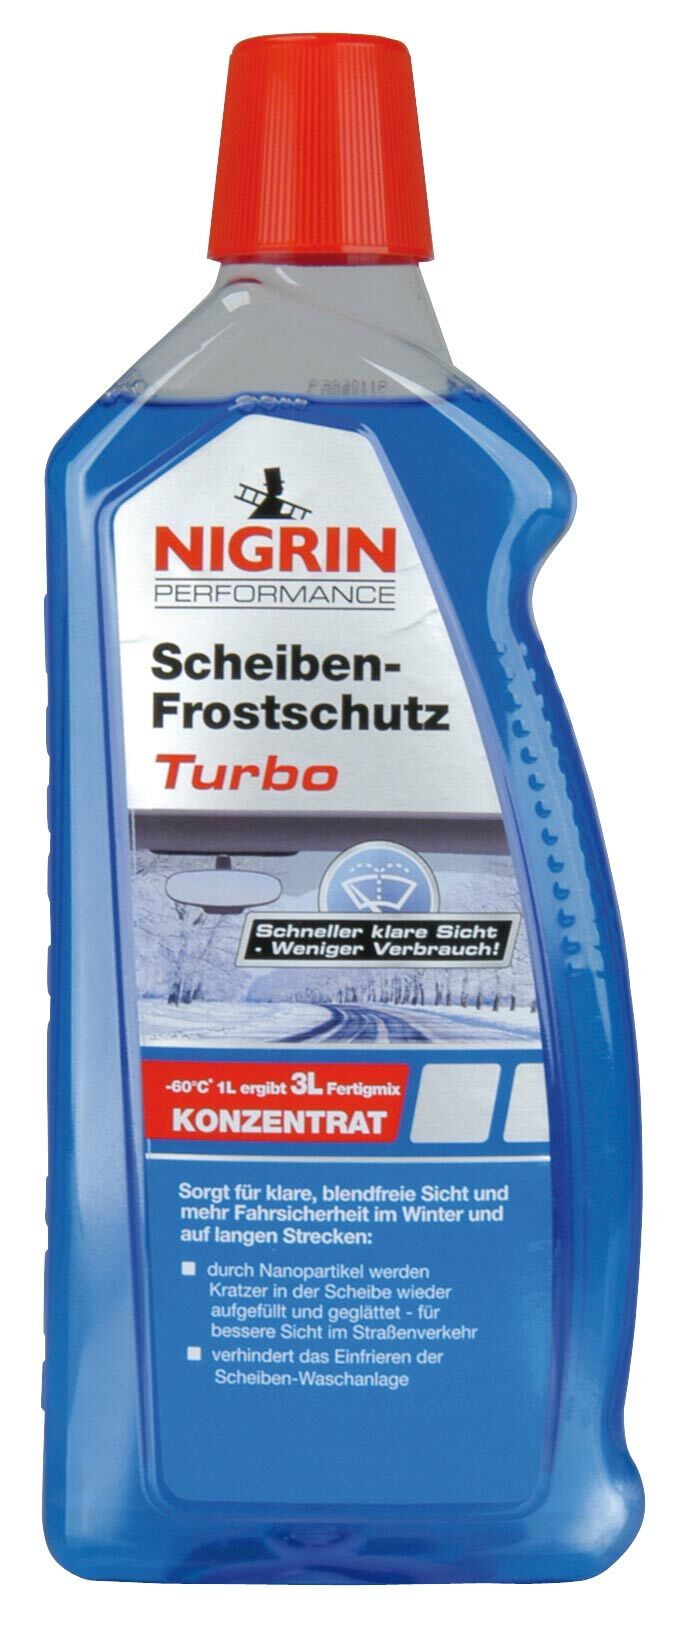 Inter-Union Frostschutz Turbo